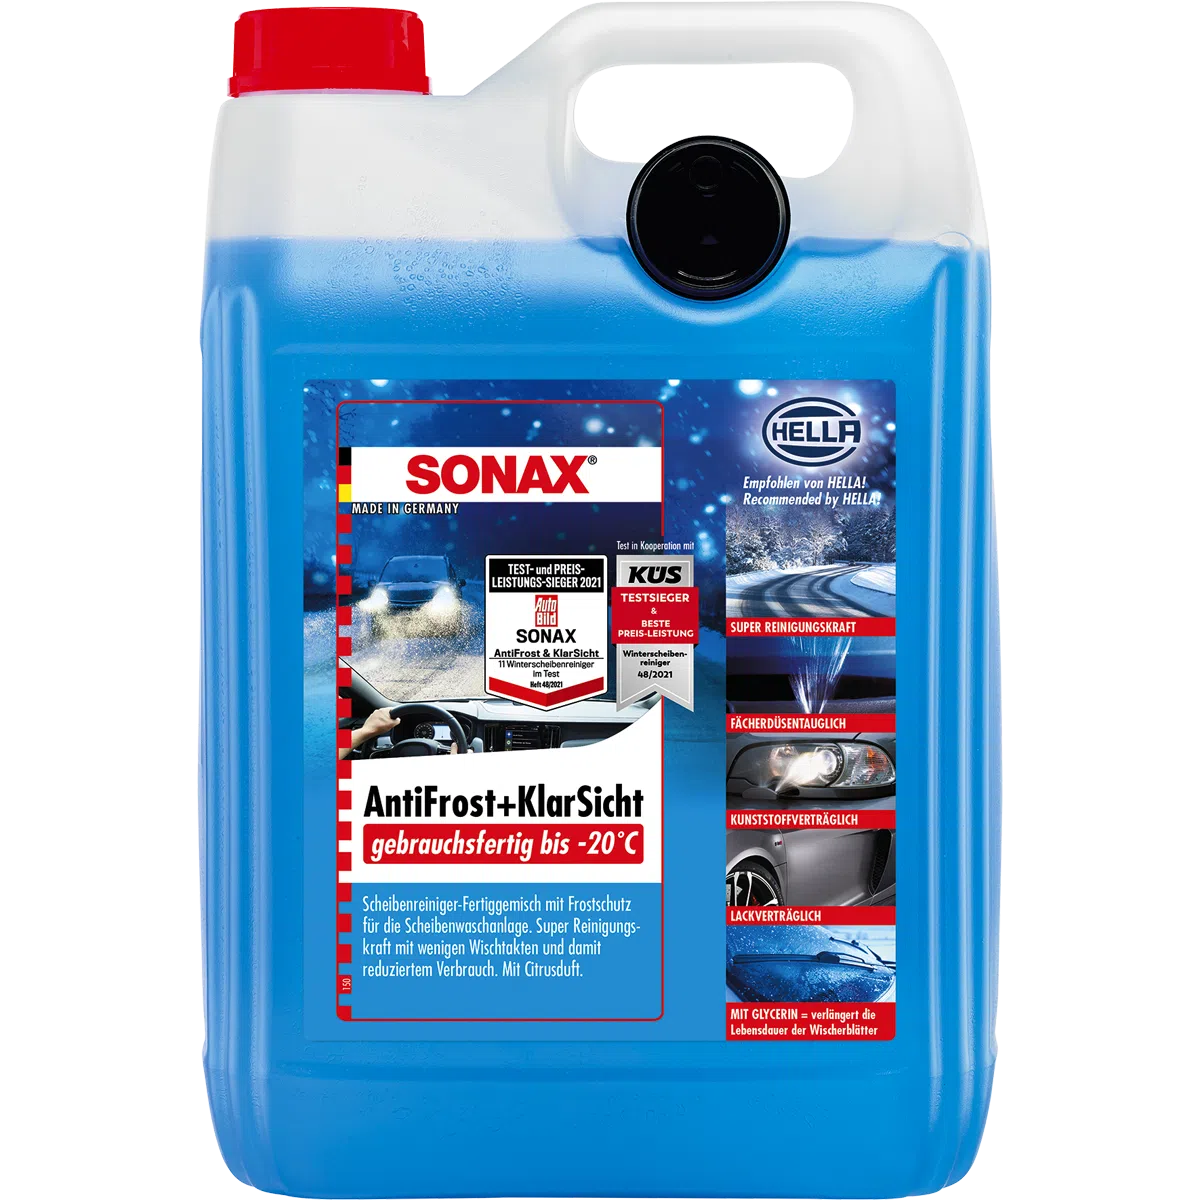 Sonax Antifrost und Klarsicht gebrauchsfertig bis -20°C 5 Liter